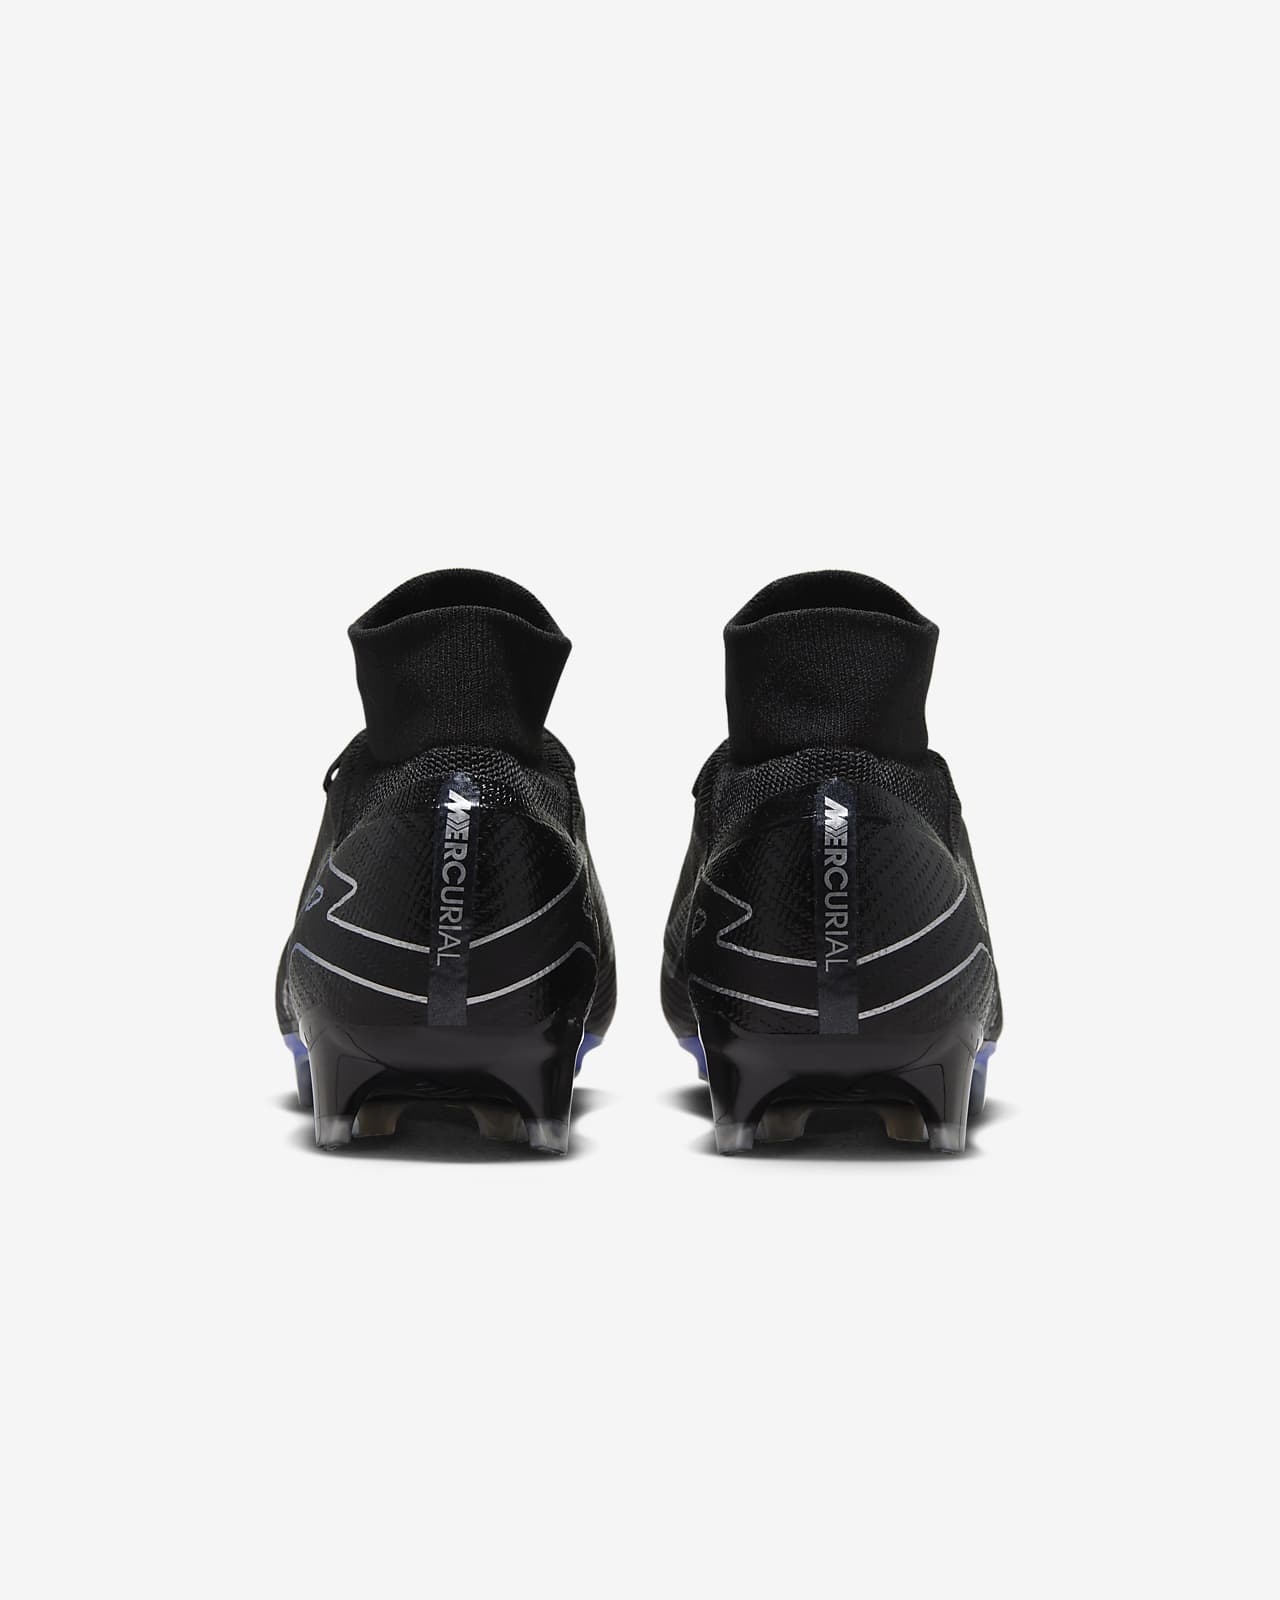 Chaussure de foot montante à crampons pour terrain sec Nike